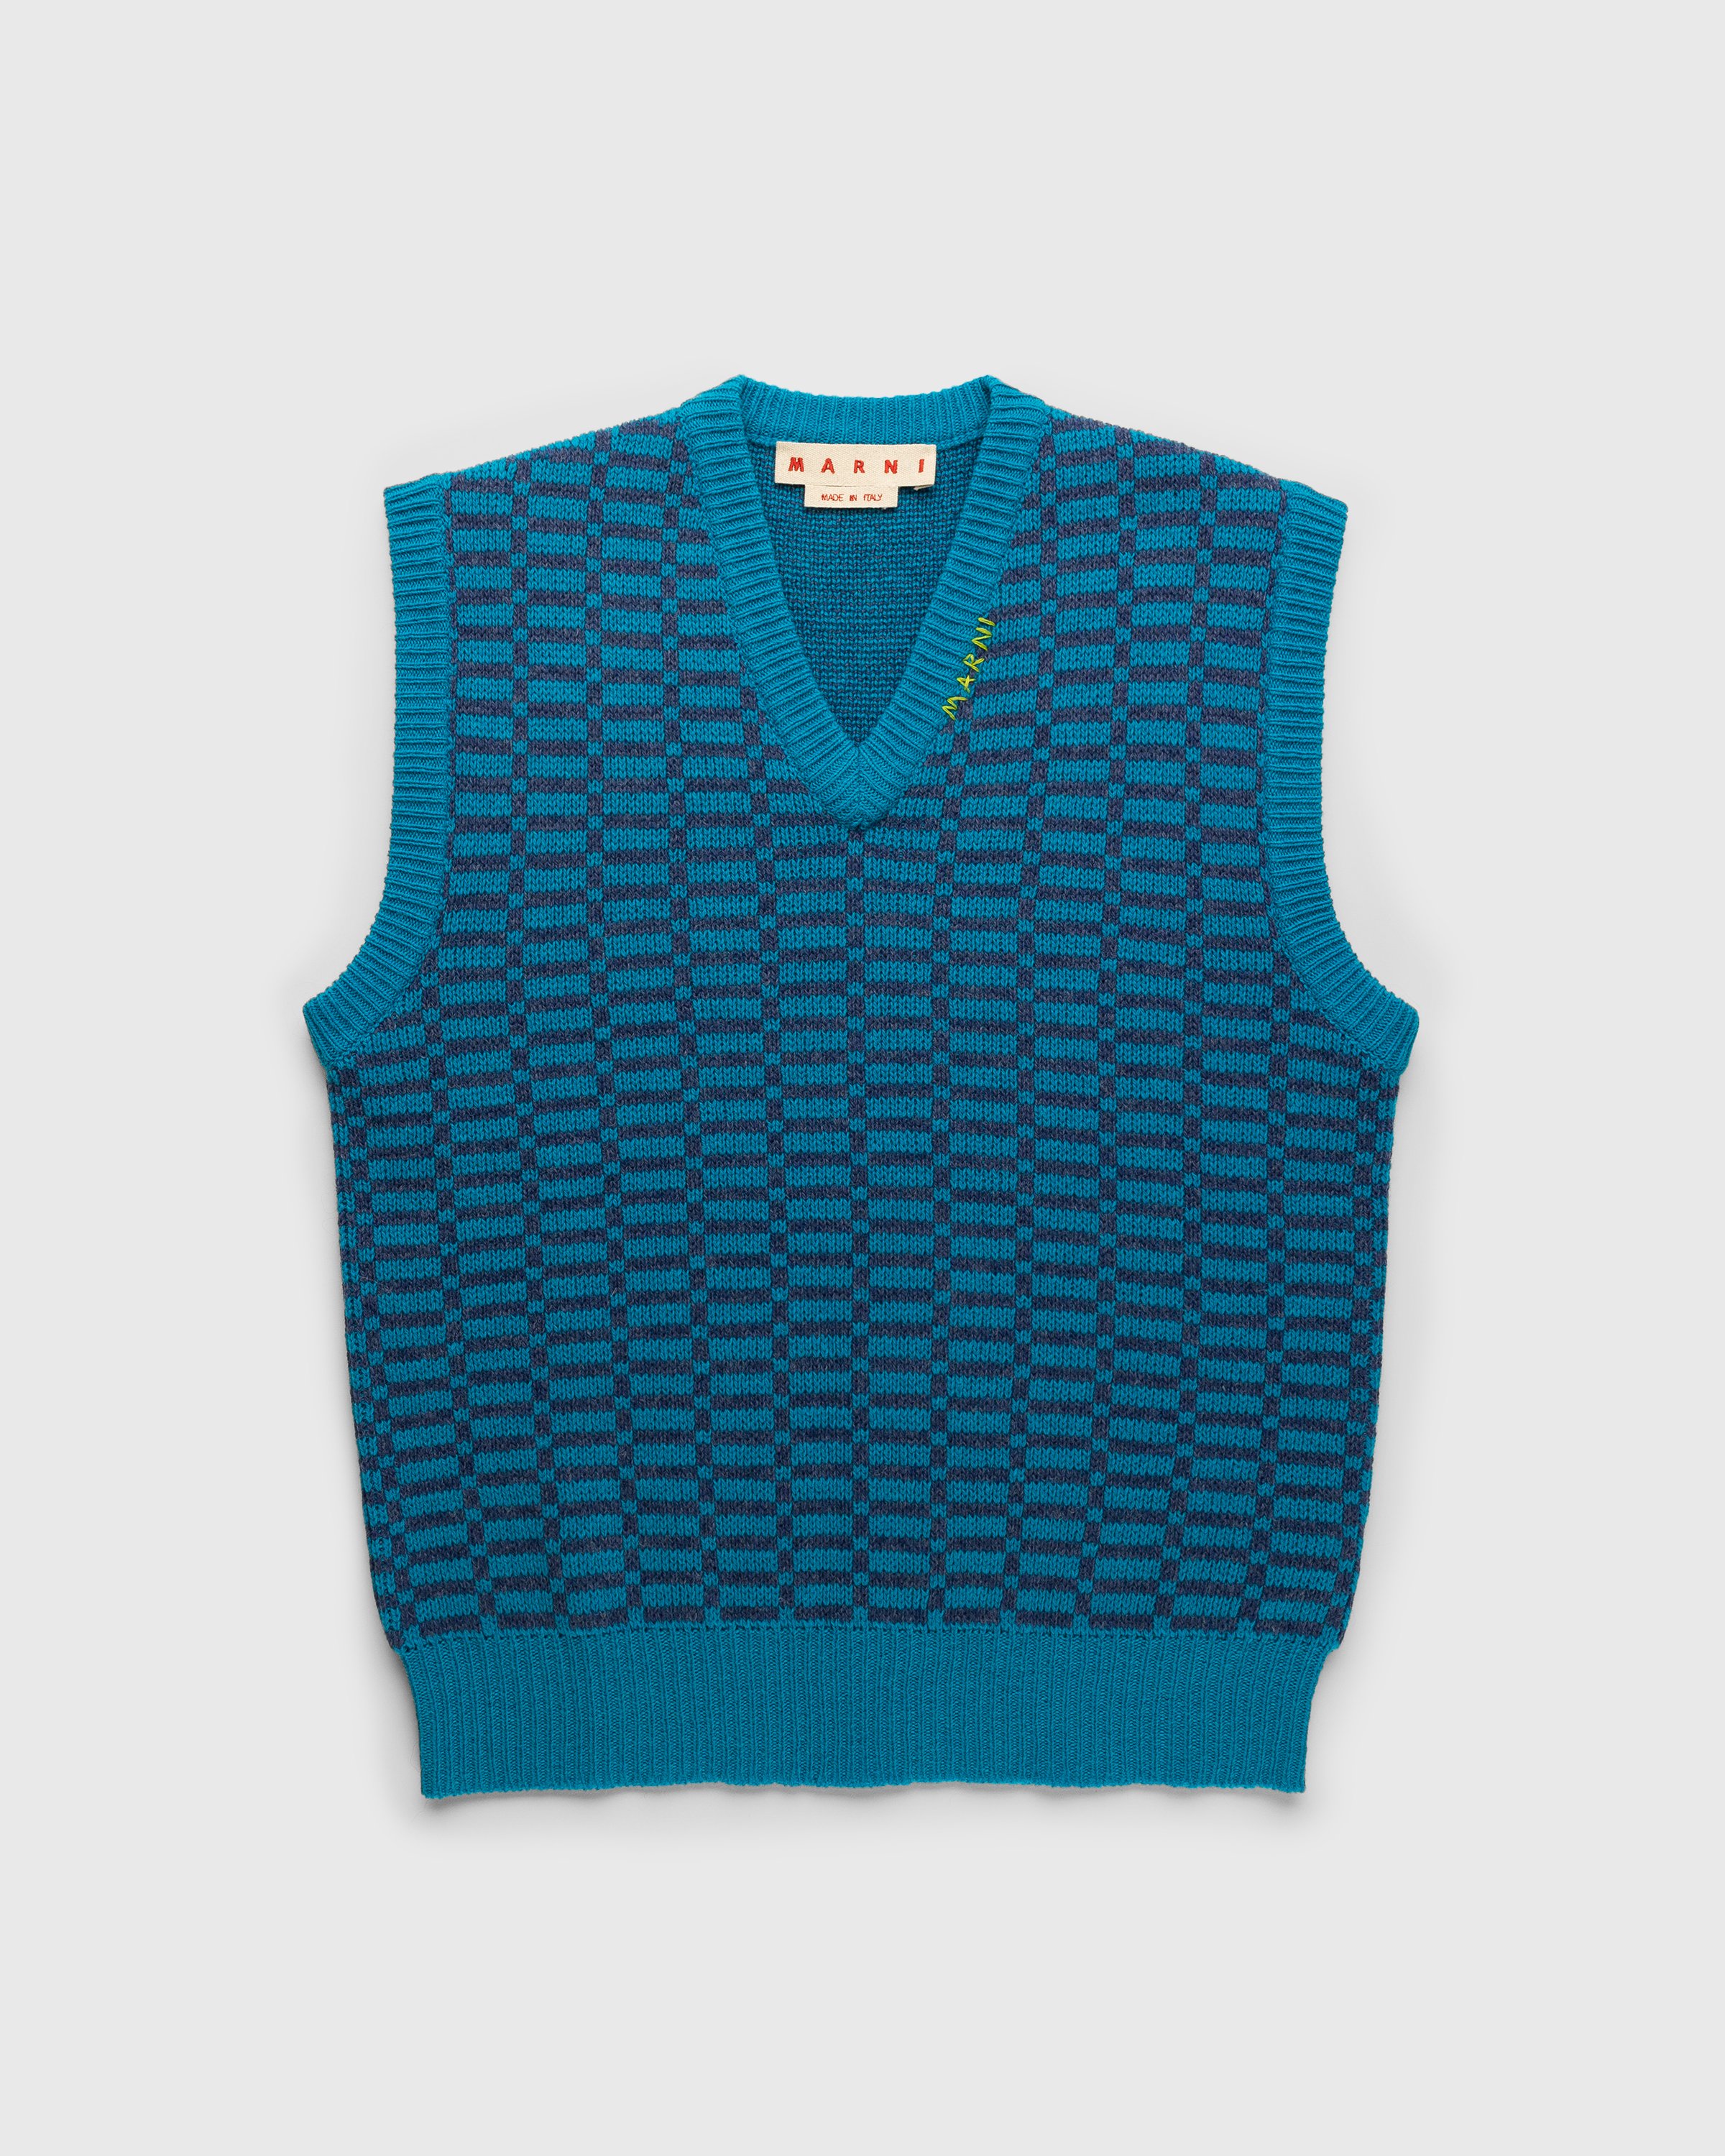 Marni - Shetland Wool V-Neck Sweater Vest Blue - Clothing - Blue - Image 1